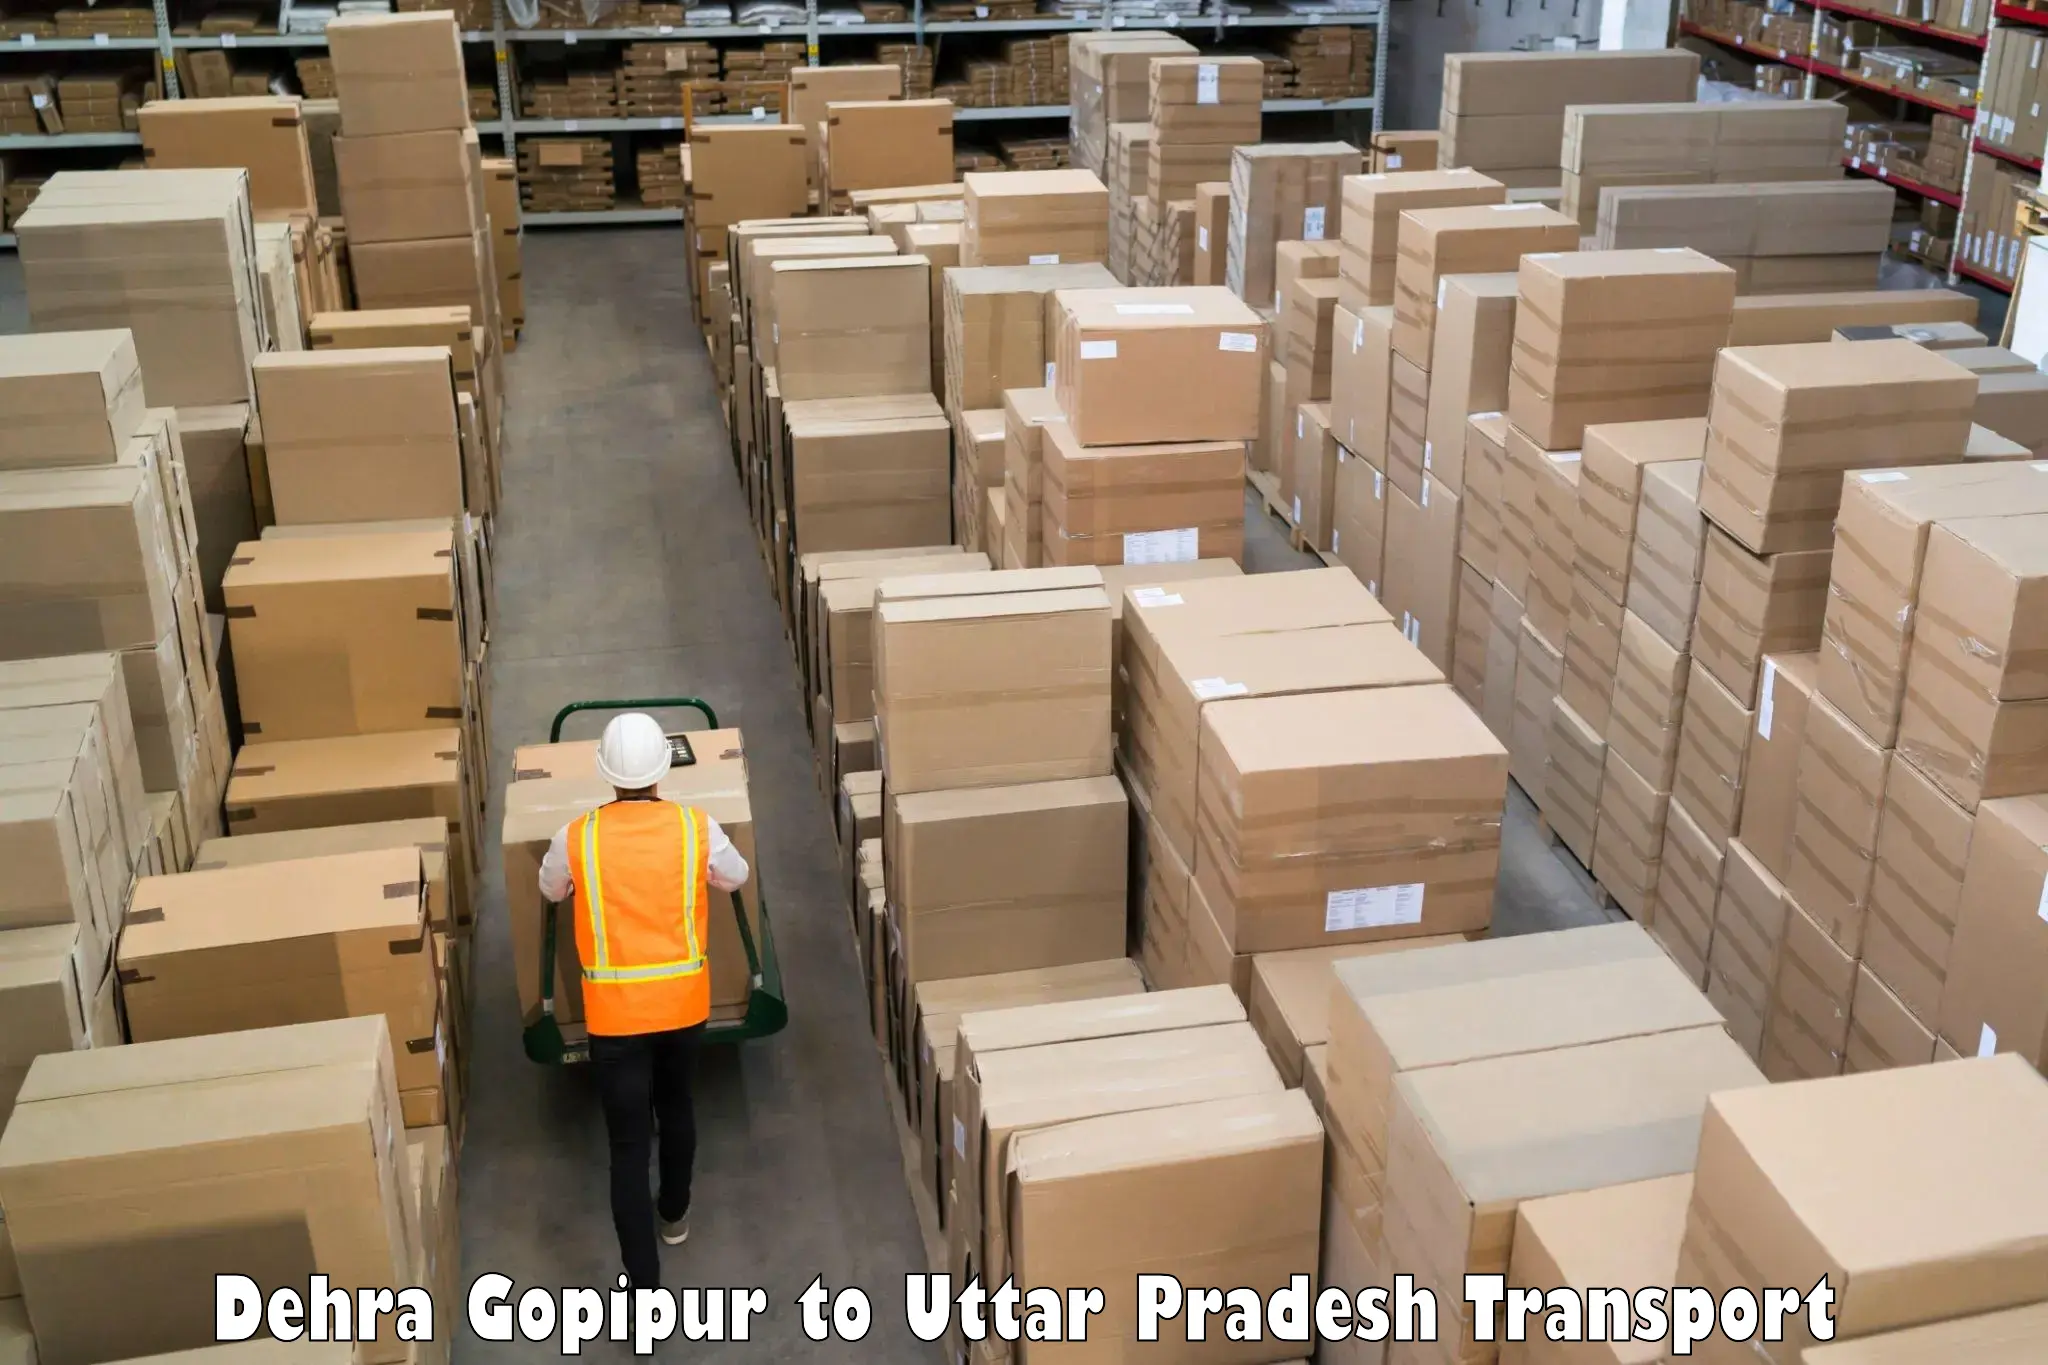 Road transport online services Dehra Gopipur to Moradabad